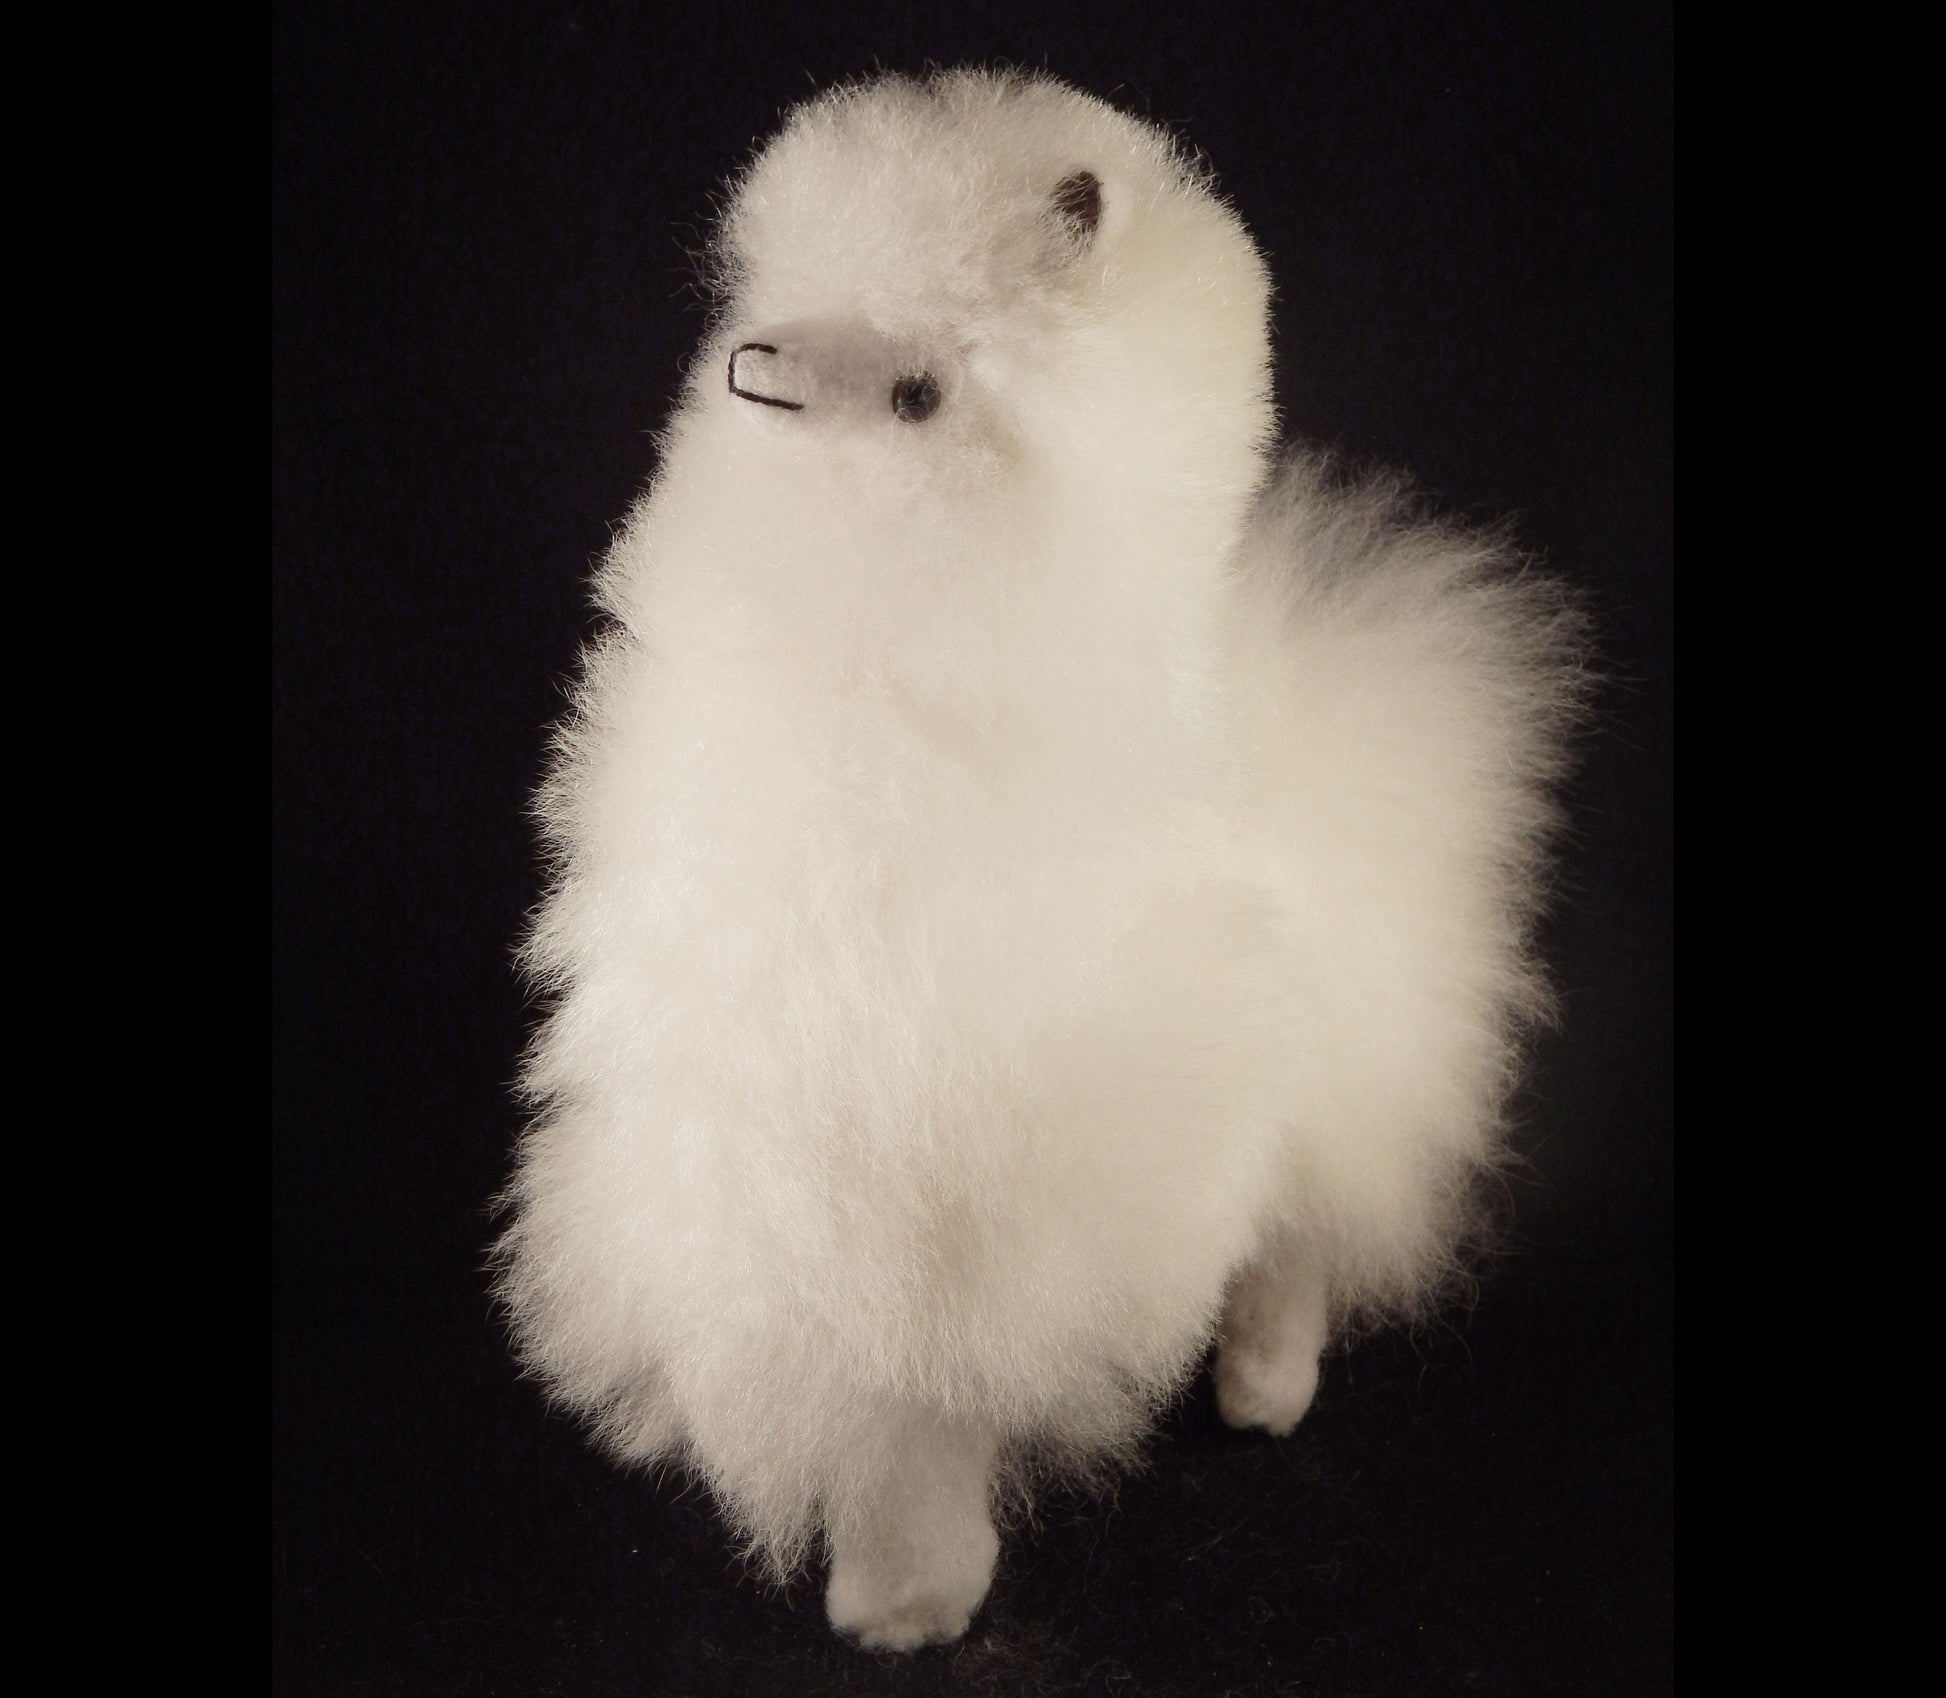 fluffy baby alpaca